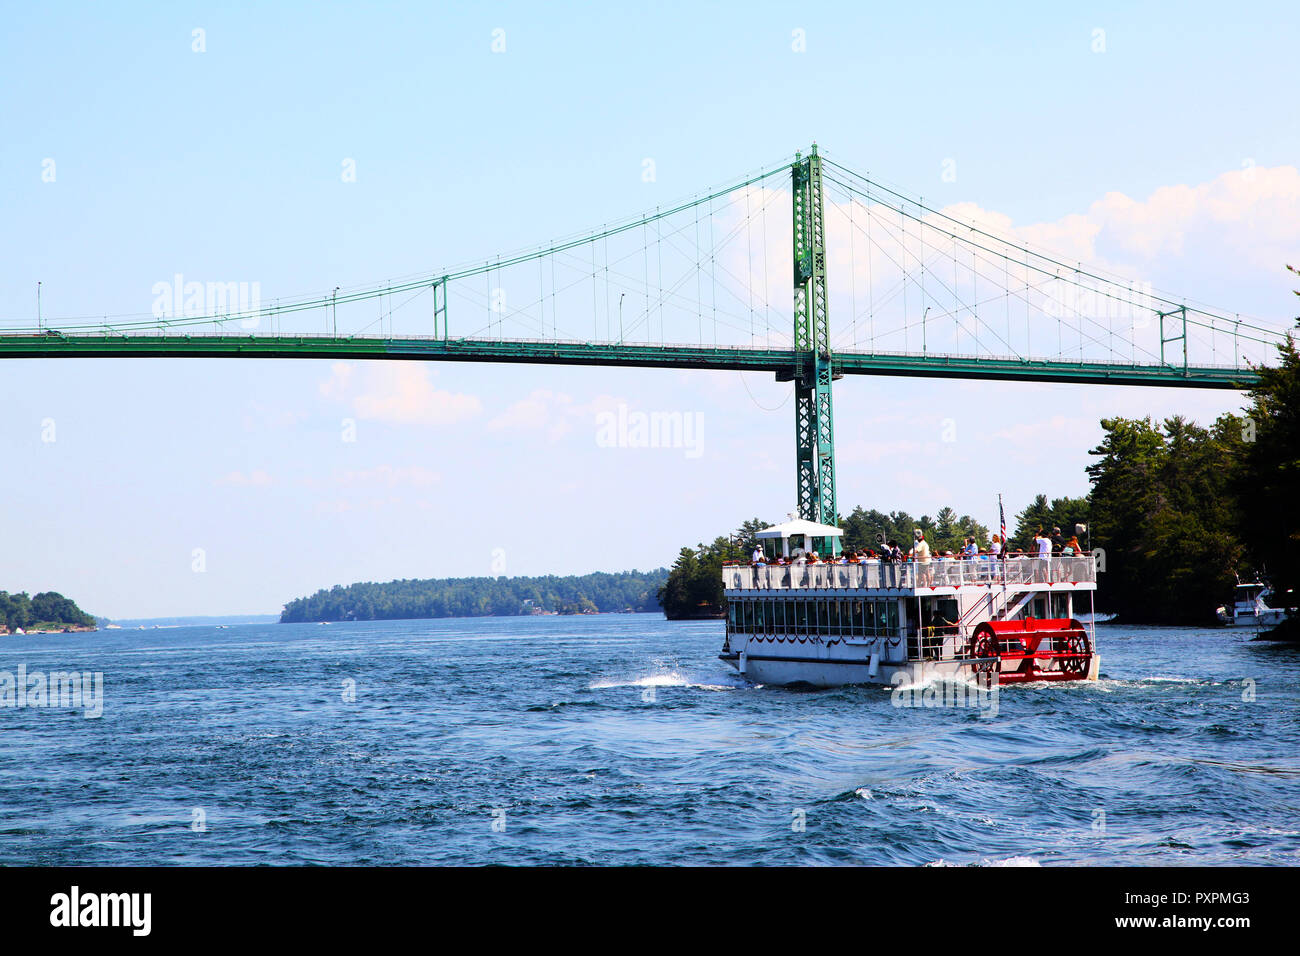 Un bateau de croisière s'approche du pont international des Mille-Îles sur le fleuve Saint-Laurent, reliant New York, USA, avec l'Ontario, Canada au milieu Banque D'Images